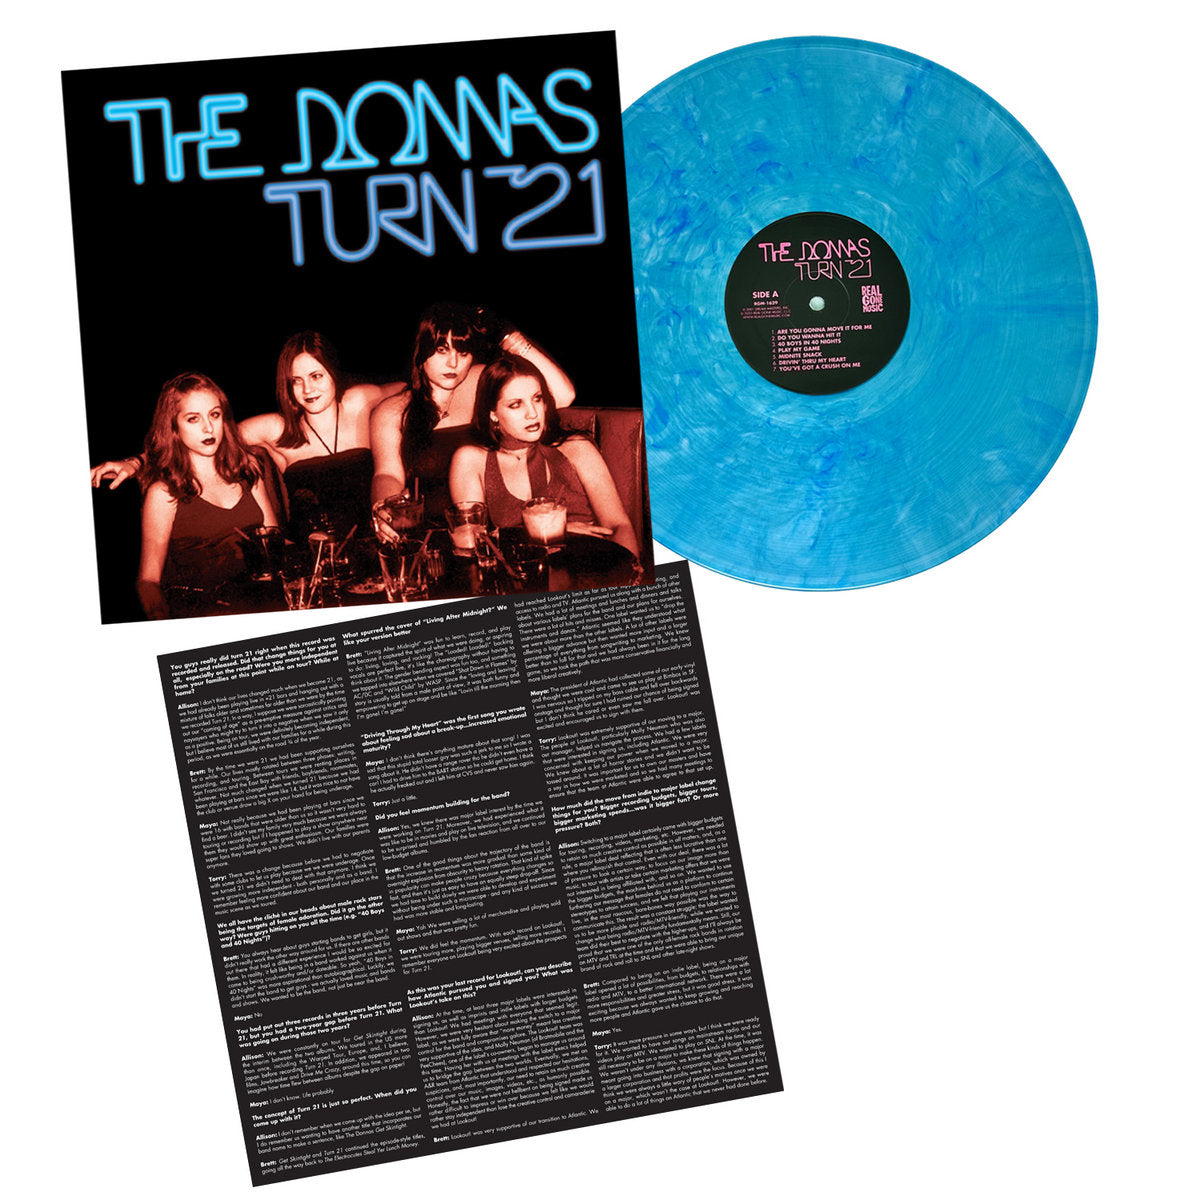 THE DONNAS - TURN 21 Vinyl LP